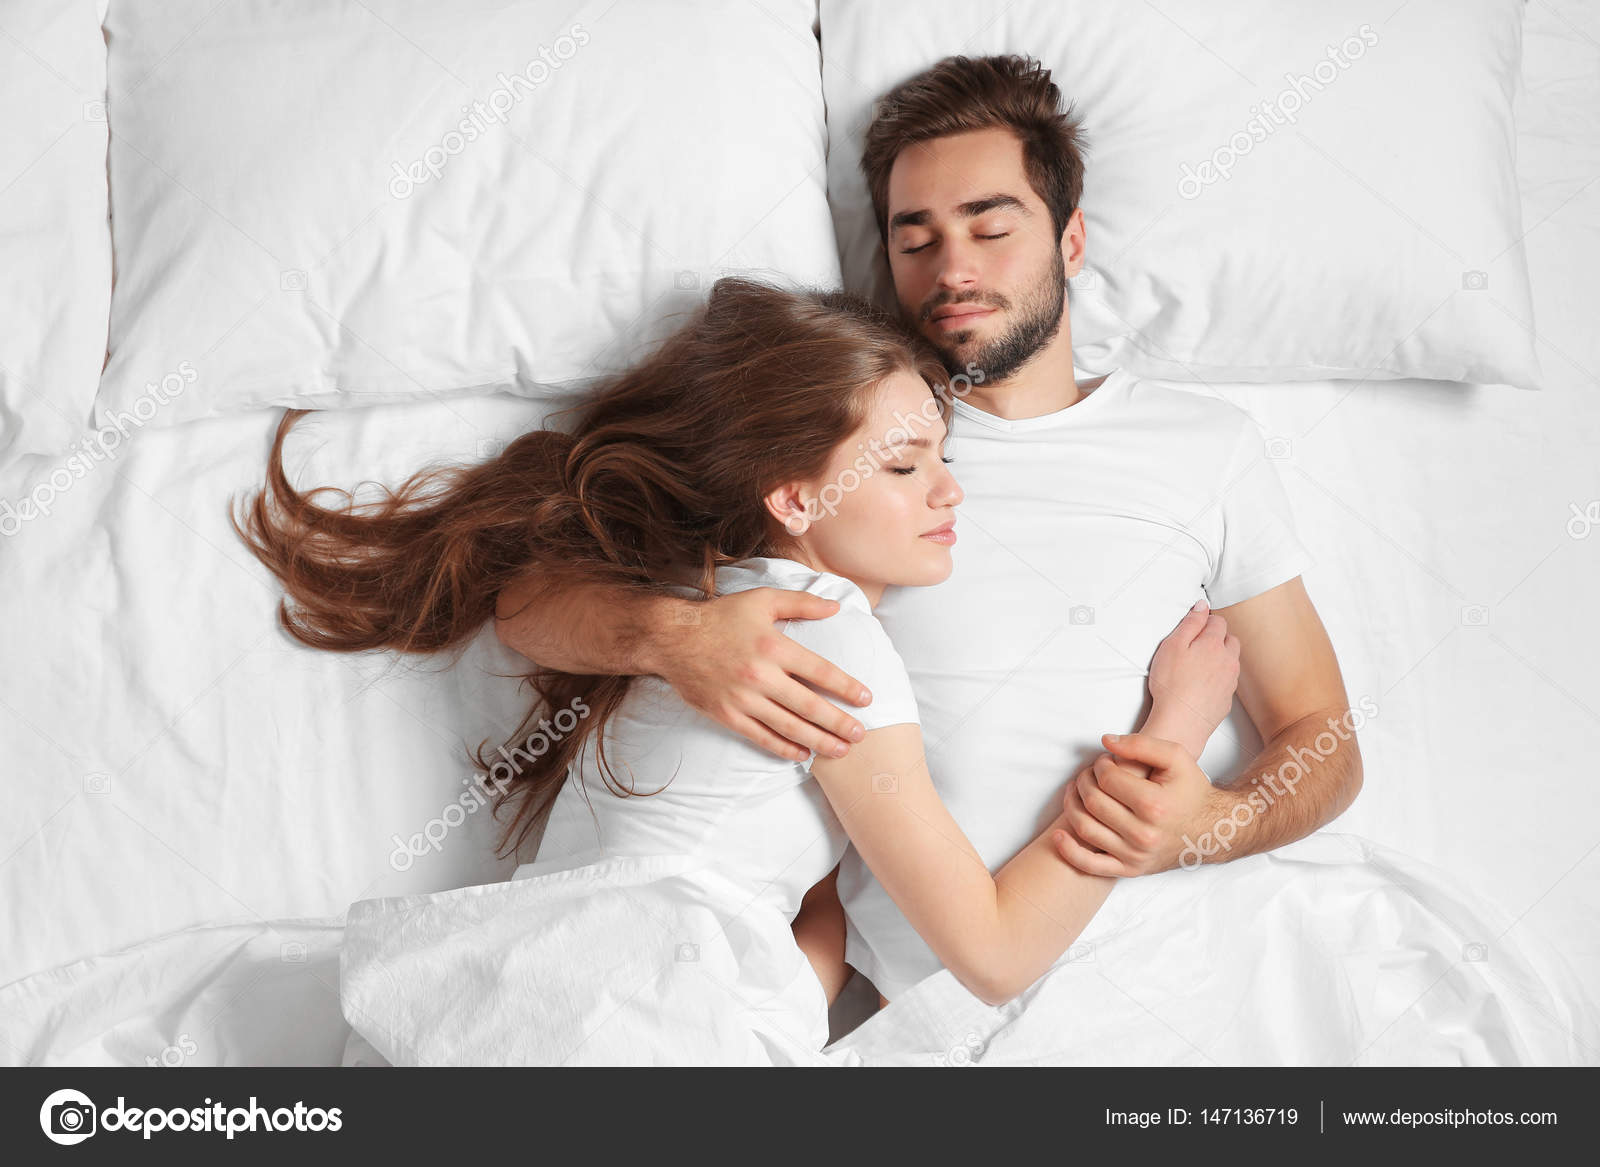 Когда Можно Спать С Парнем После Знакомства